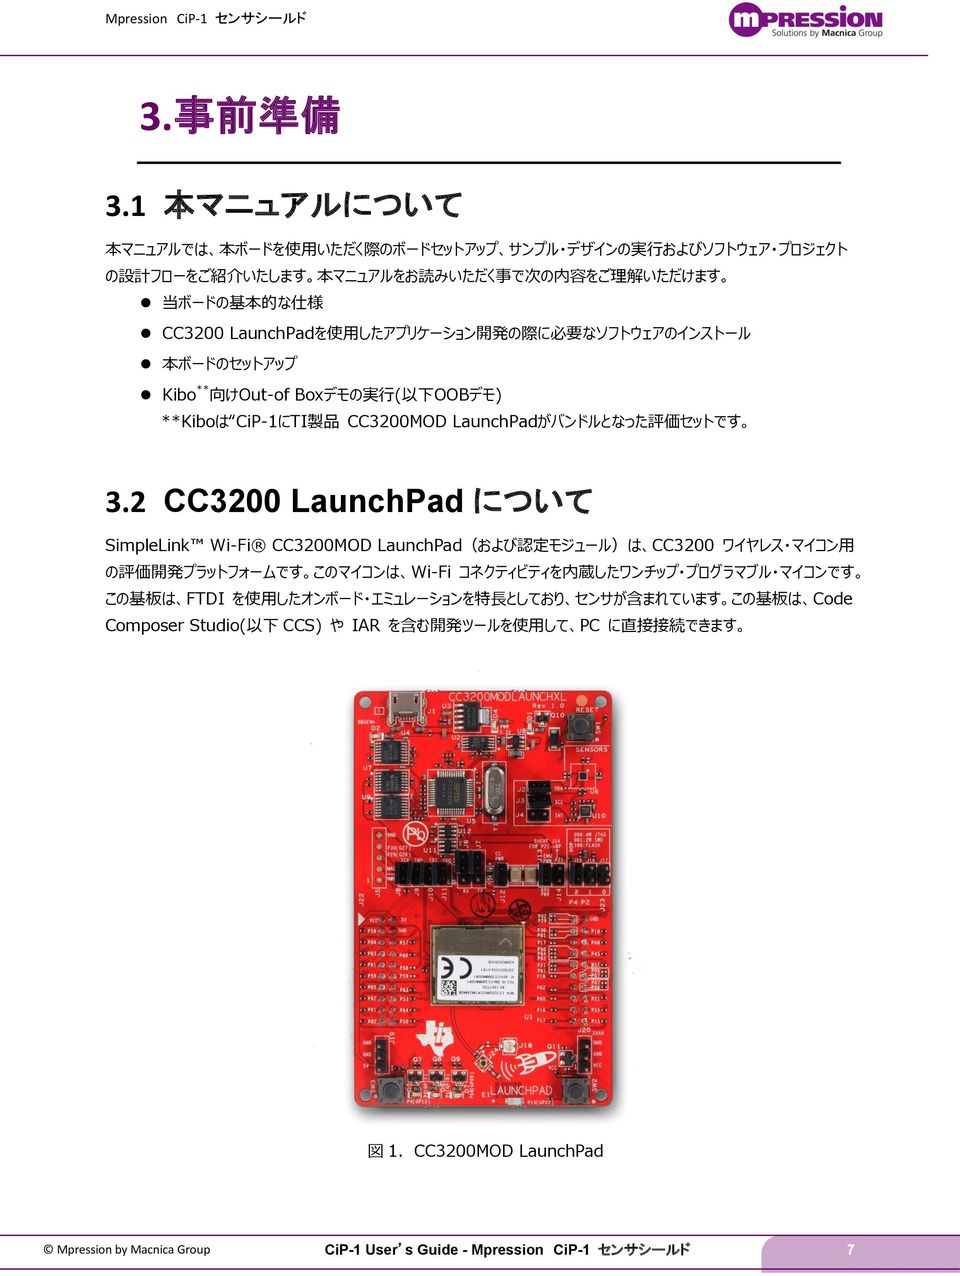 LaunchPadを使用したアプリケーション開発の際に必要なソフトウェアのインストール 本ボードのセットアップ Kibo**向けOut-of Boxデモの実行(以下OOBデモ) **Kiboは CiP-1にTI製品 CC3200MOD LaunchPadがバンドルとなった評価セットです 3.